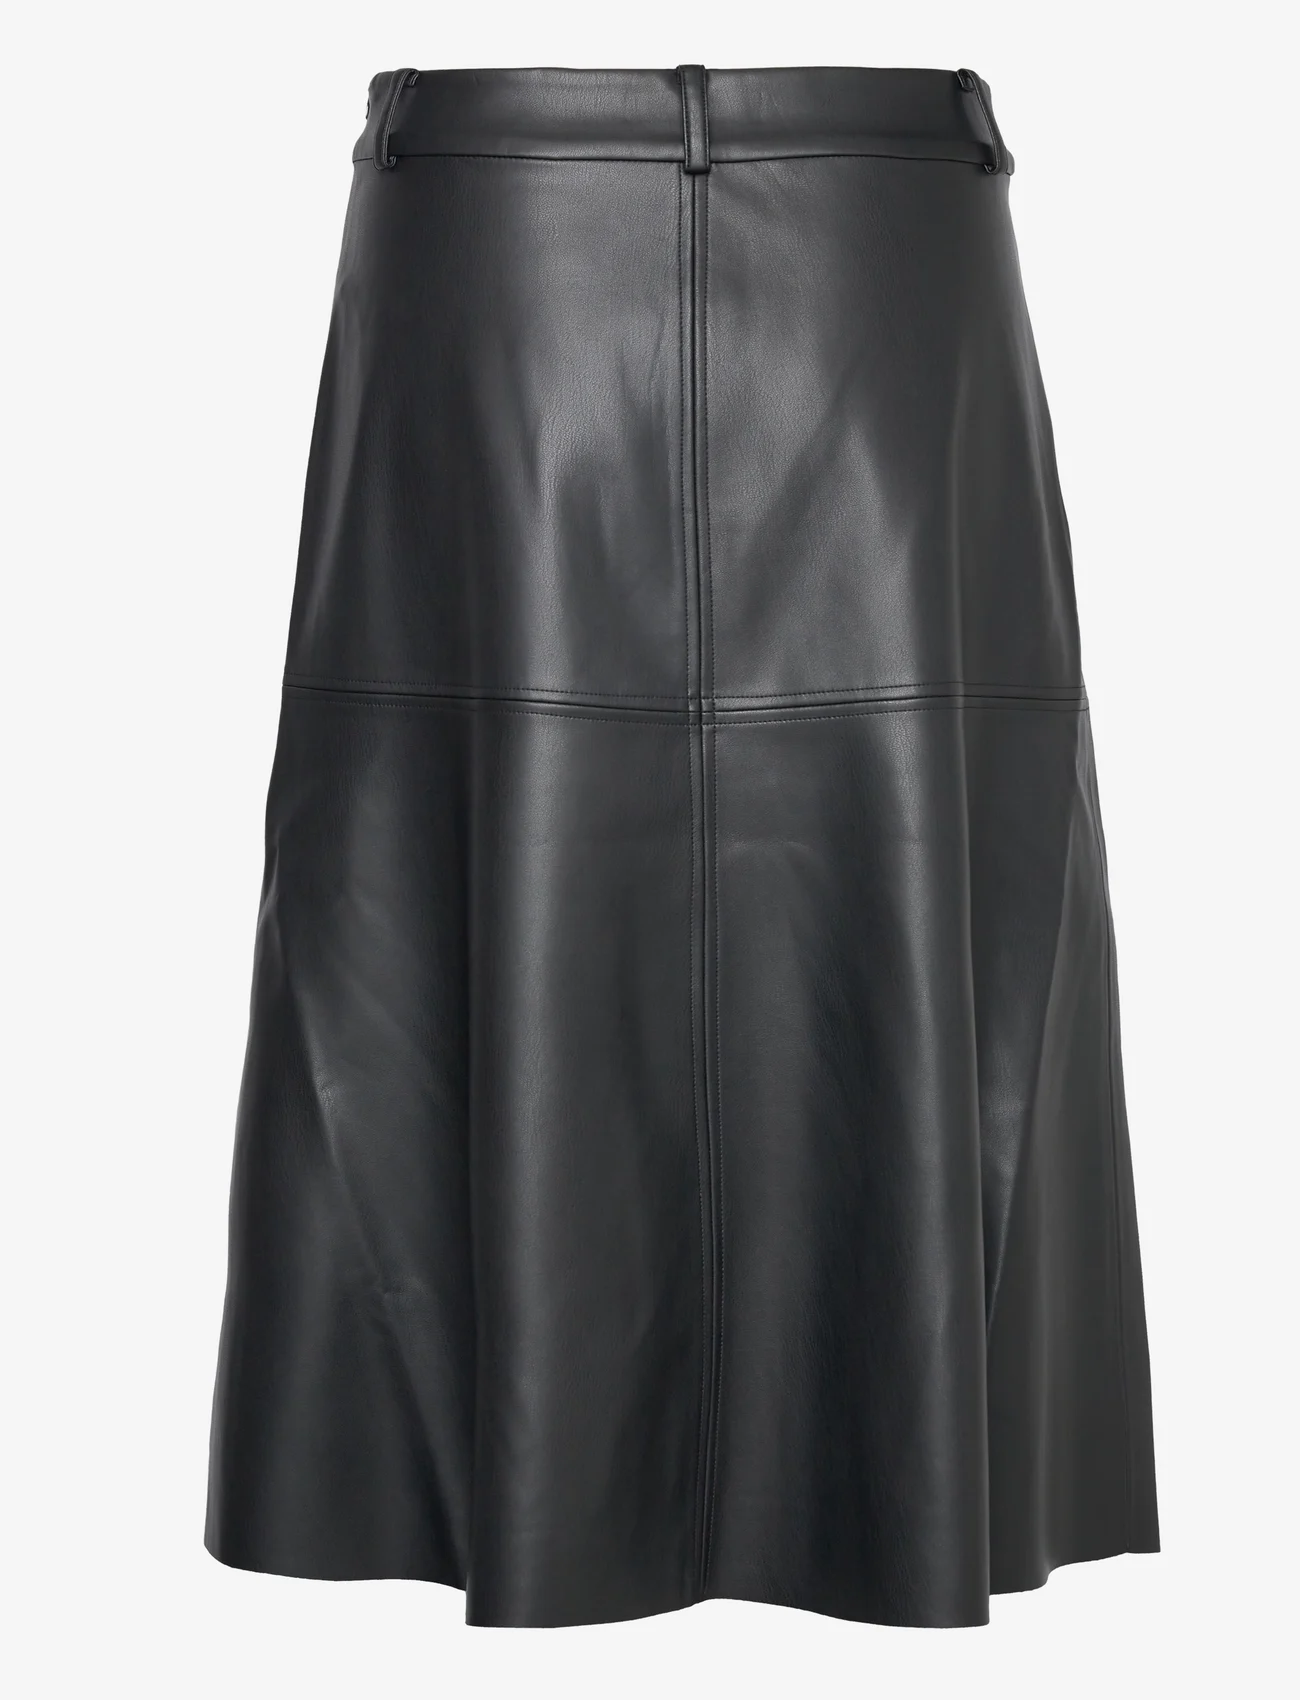 Bruuns Bazaar - VeganiBBImma skirt - skjørt i skinn - black - 1